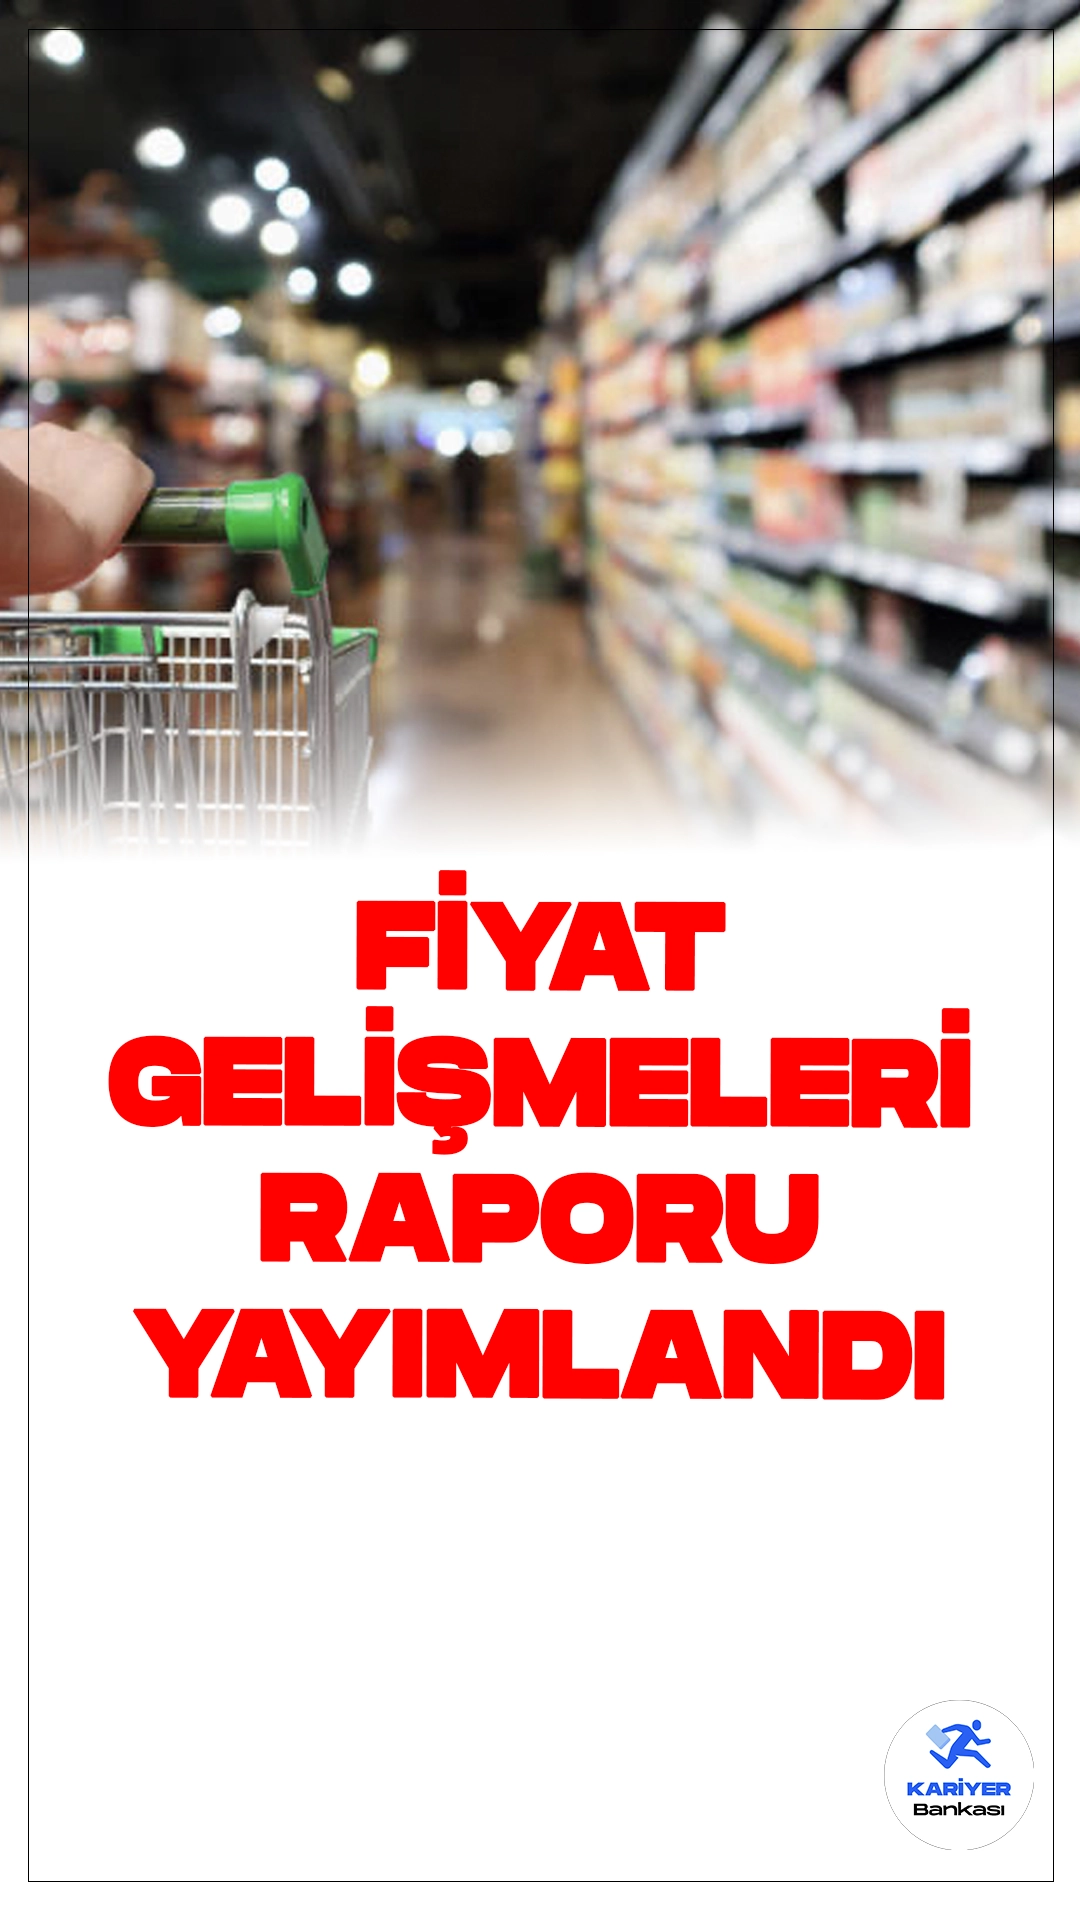 Nisan Ayı Fiyat Gelişmeleri Raporu Yayımlandı.Nisan ayında Türkiye Cumhuriyet Merkez Bankası (TCMB) tarafından yayınlanan Fiyat Gelişmeleri Raporu, dikkat çekici verilere sahip. Özellikle, gıda enflasyonunda yaşanan gerileme ve diğer gruplarda görülen artışlar, raporun önemli bulguları arasında yer alıyor.